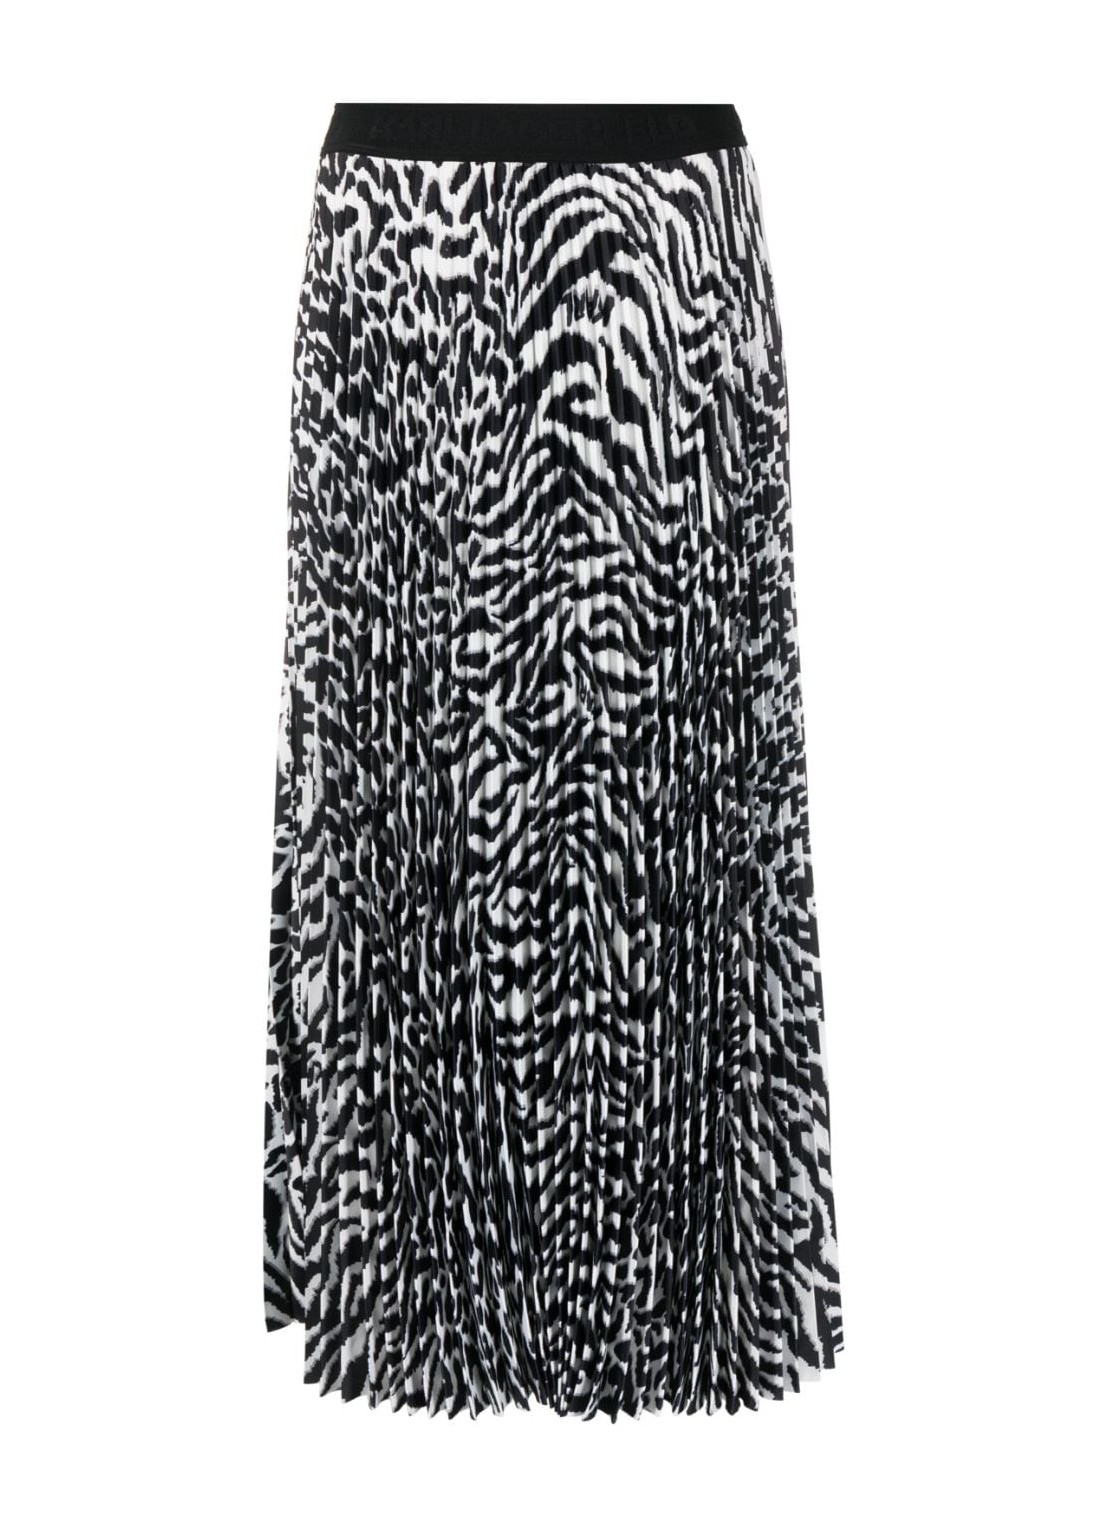 Falda karl lagerfeld skirt woman animal print pleated skirt 240w1209 r04 talla 44
 